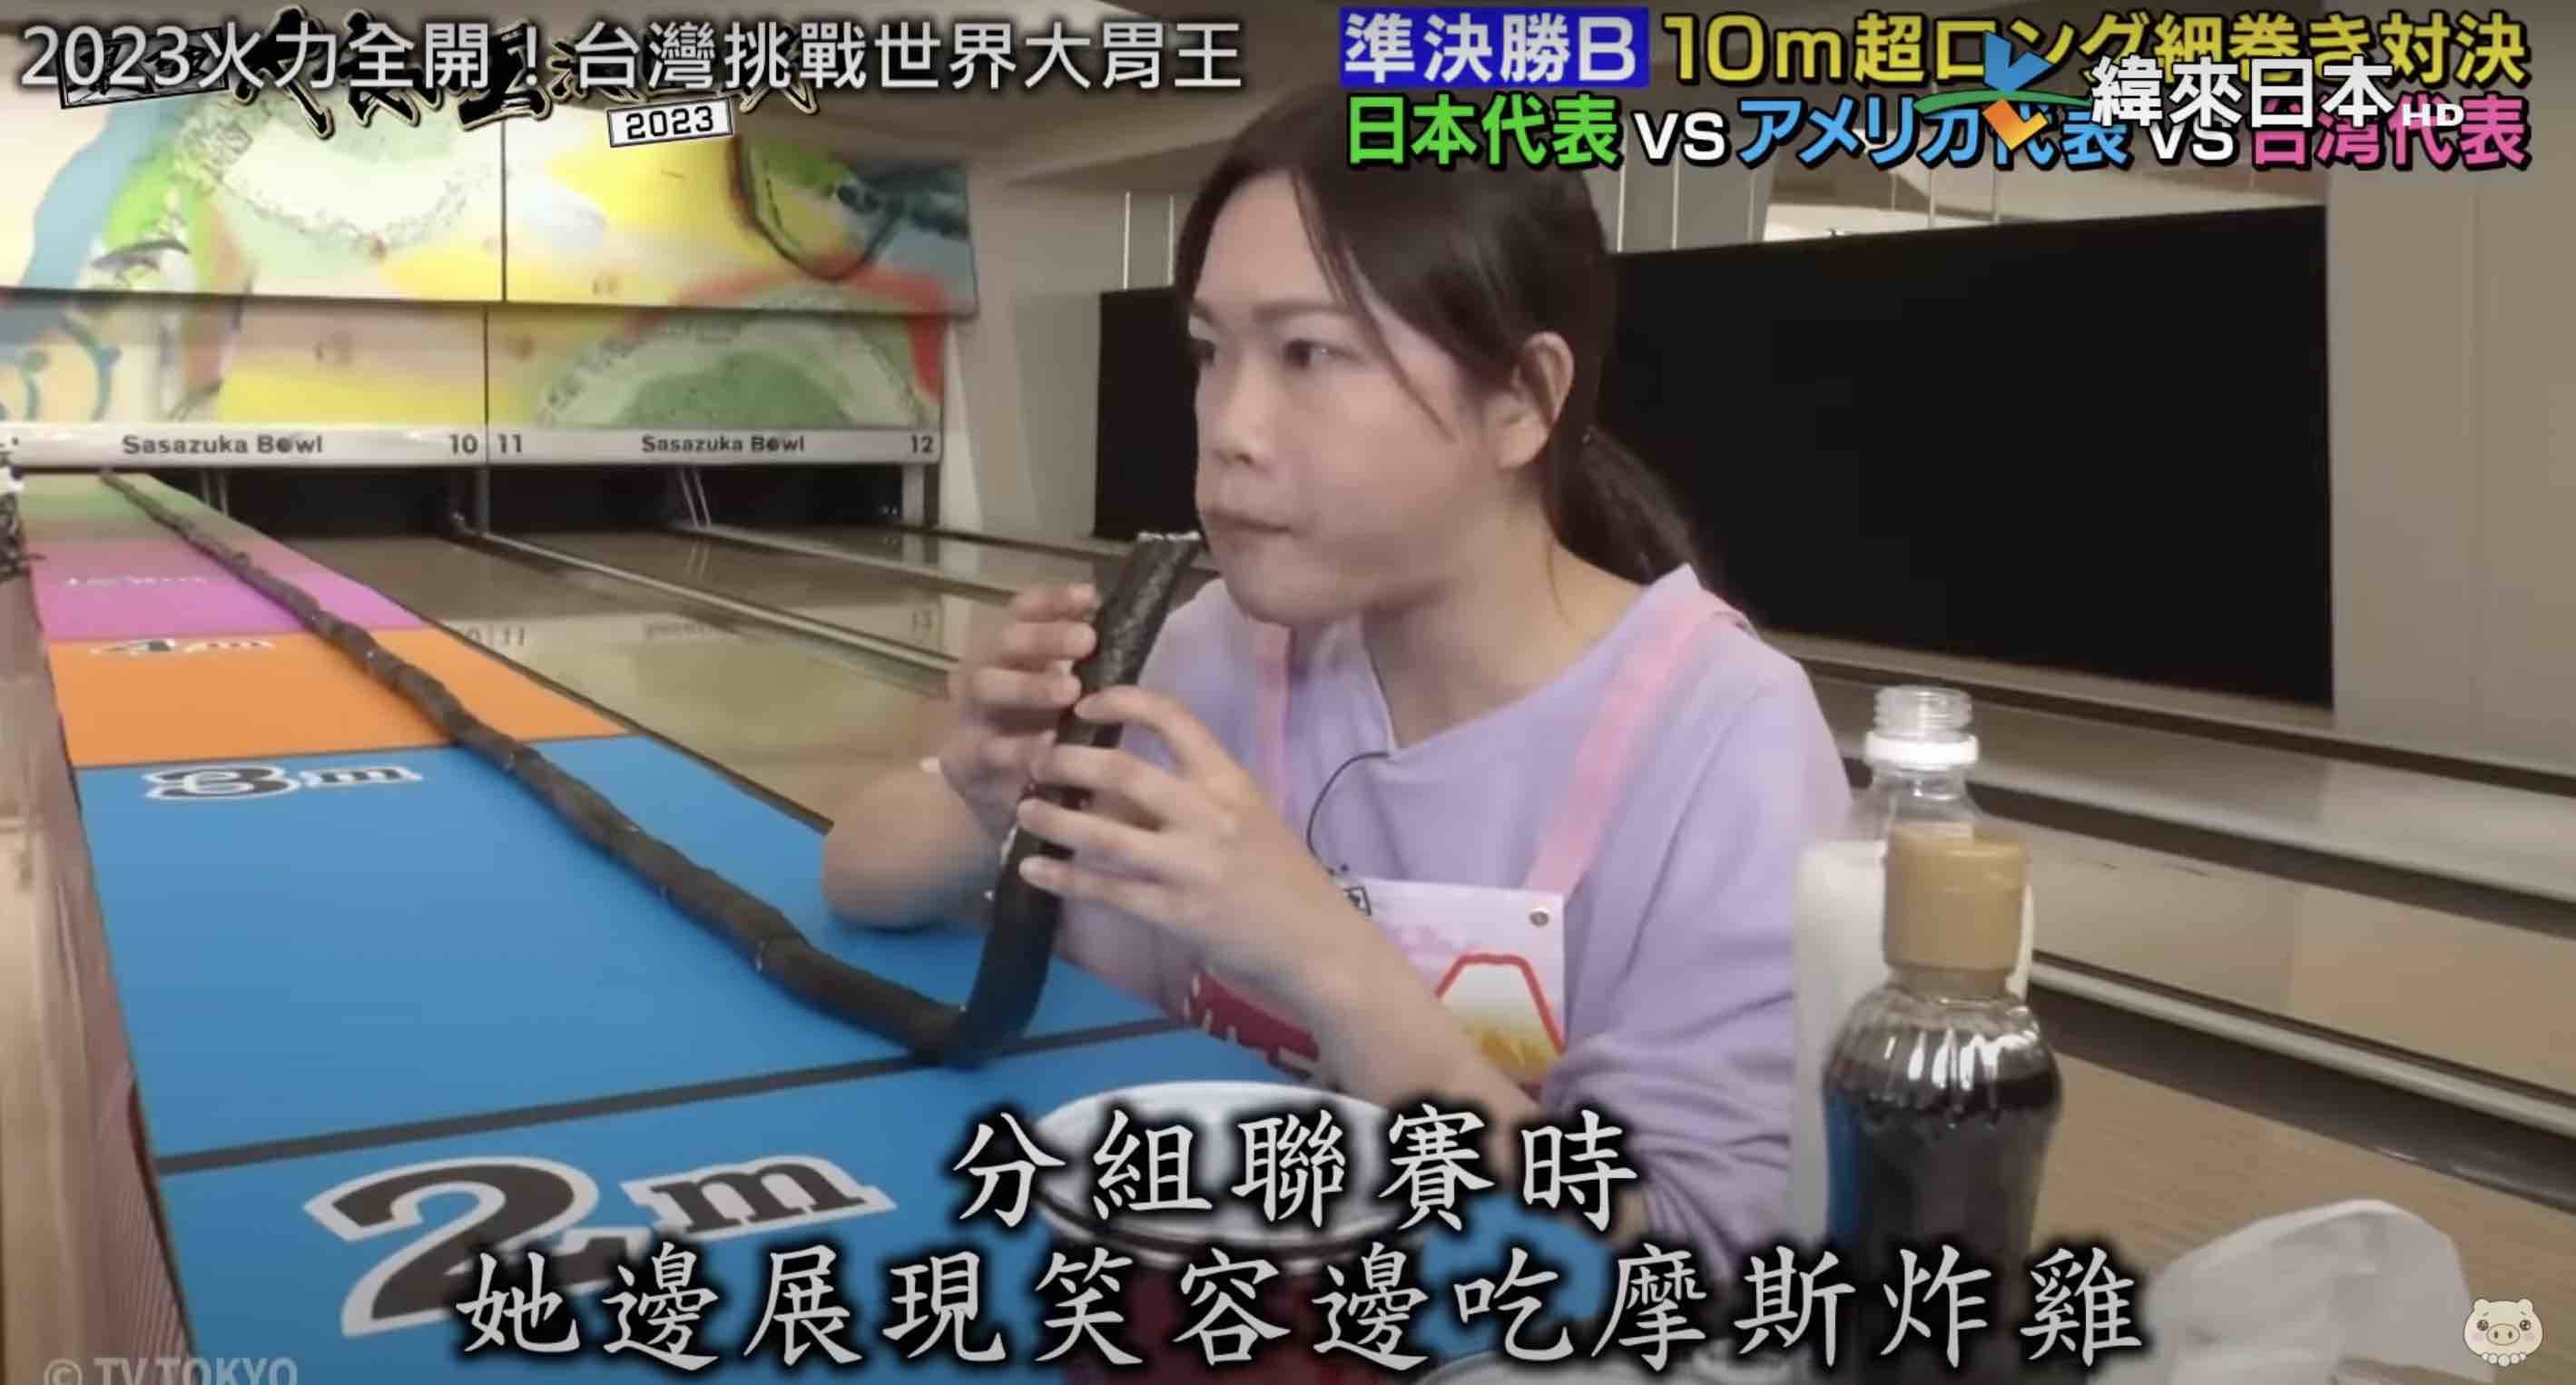 太狂了！台灣21歲「笑顏爆食少女」晉級世界大胃王8強　打破赤坂女王紀錄